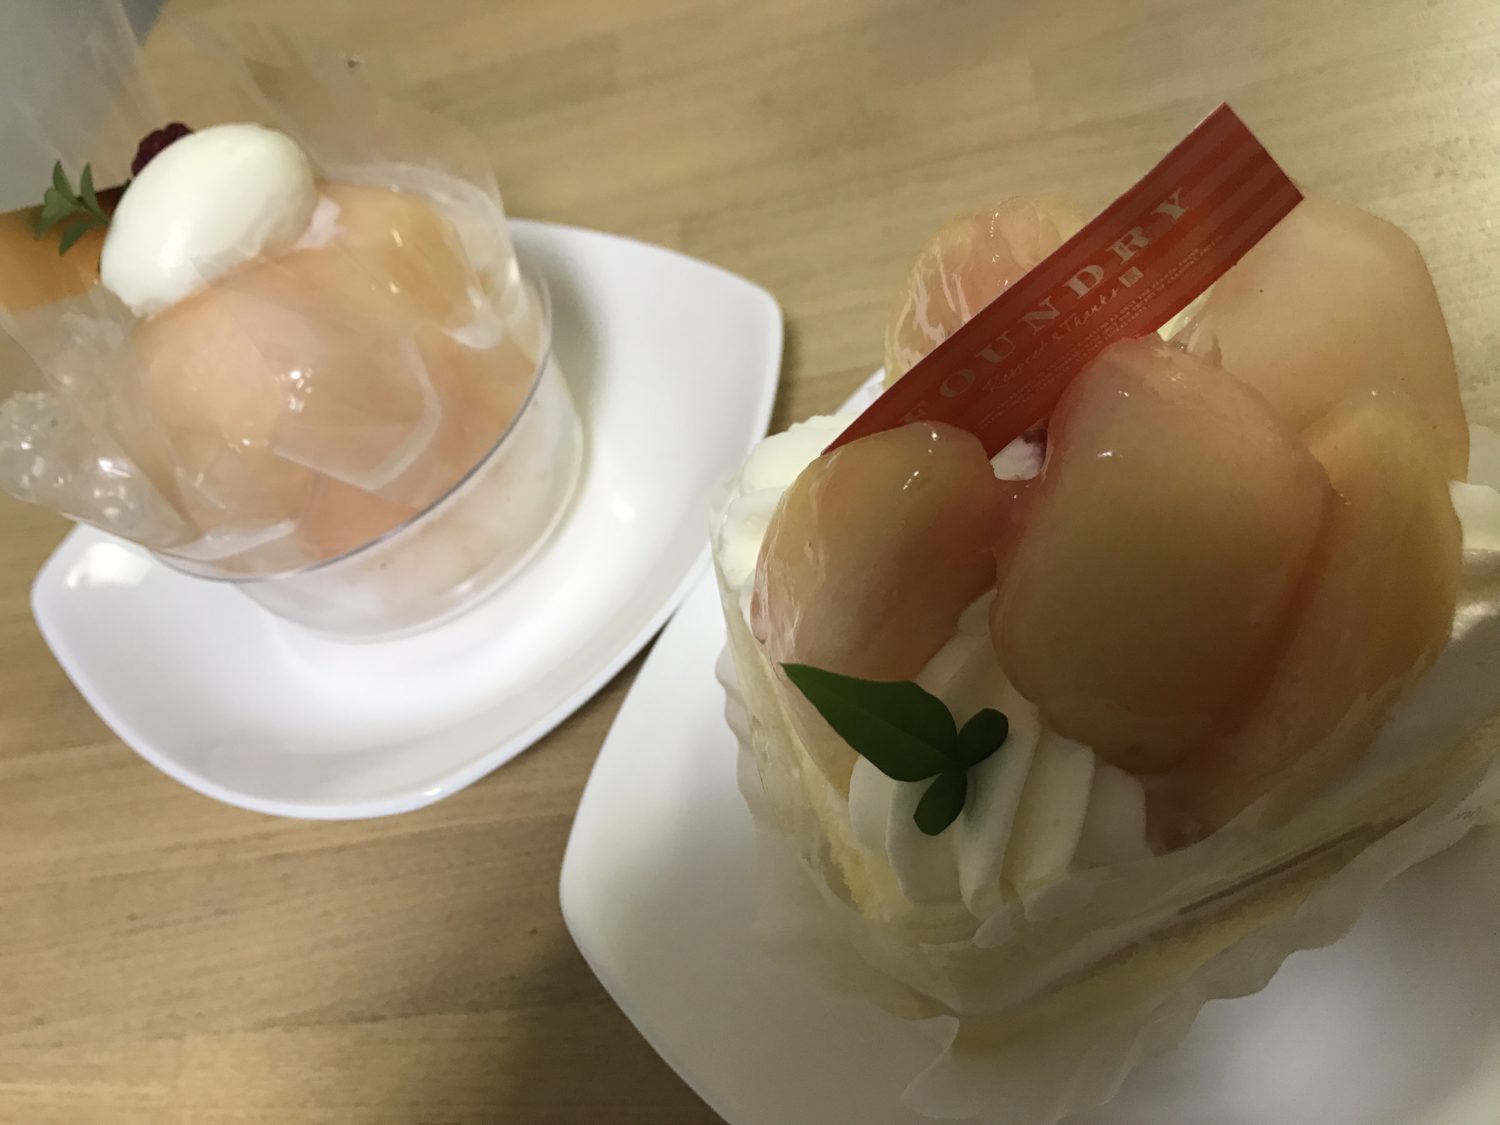 軽井沢からやってきた「FOUNDRY」の「まるごと桃のデザート」を新宿高島屋店で買って食べたら、驚くほどの美味しさだった